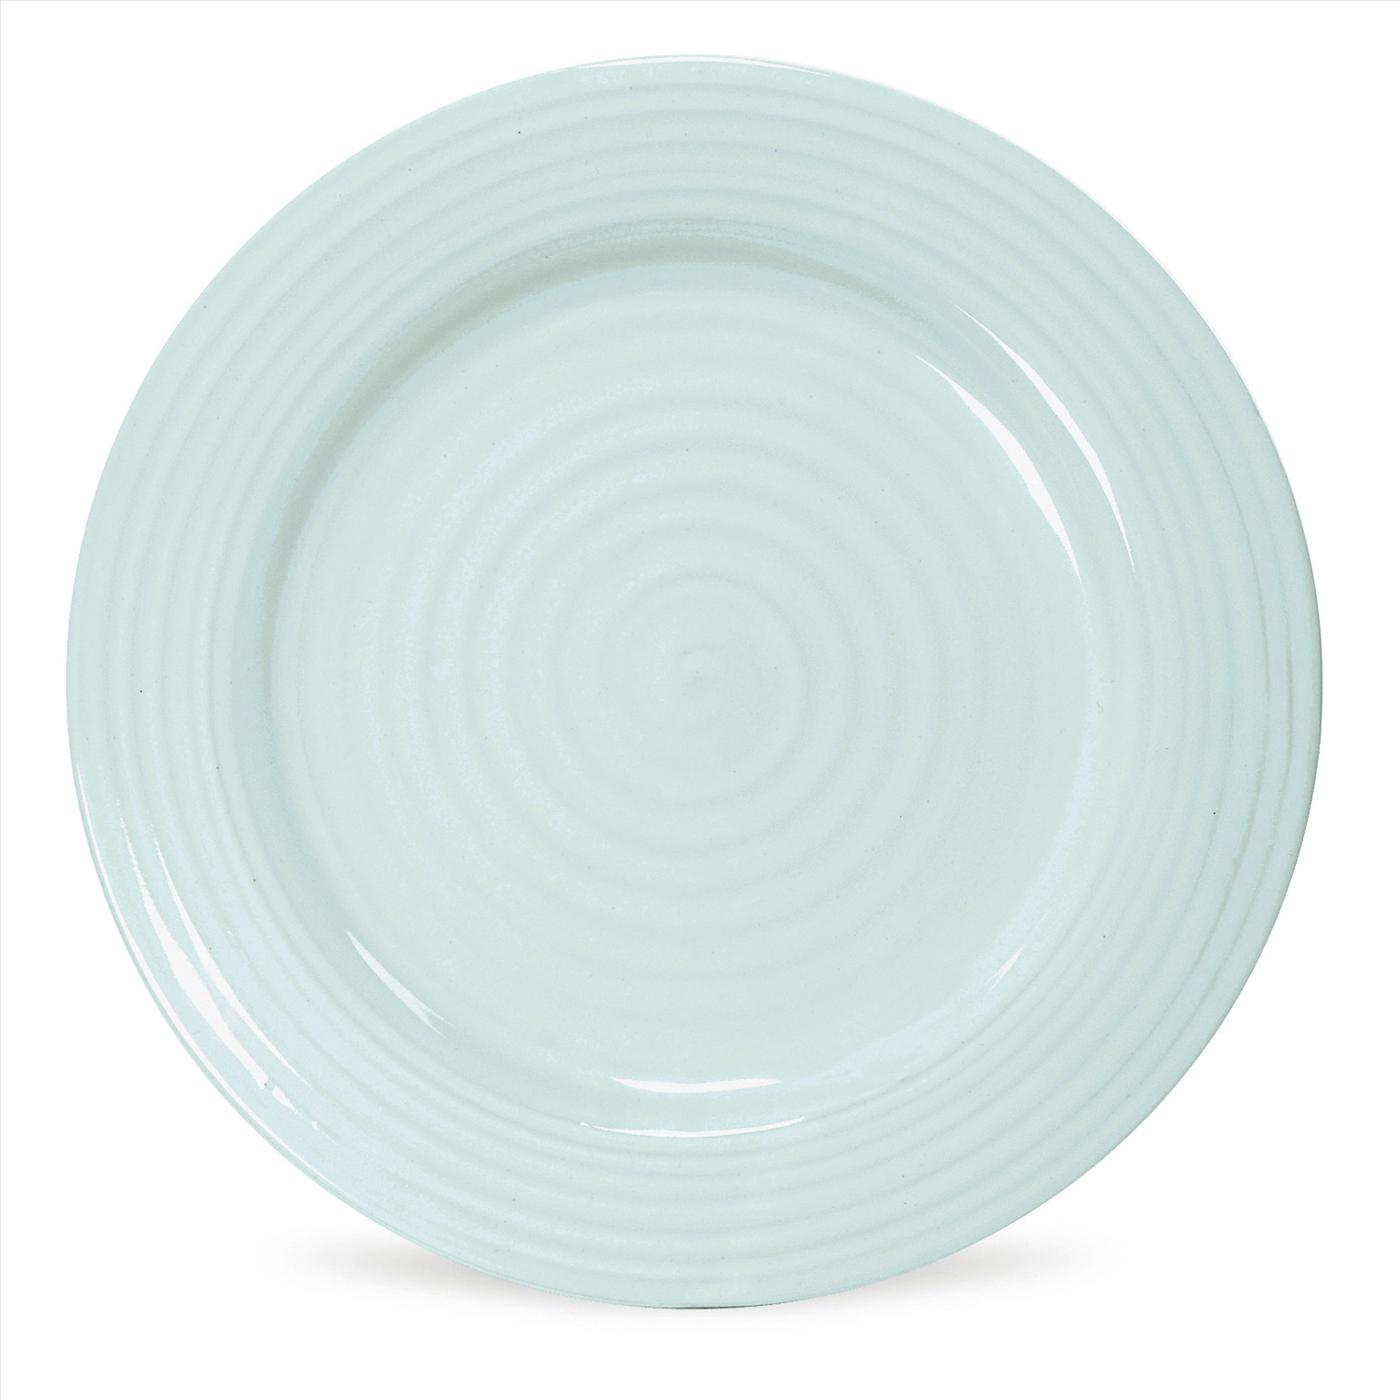 Sophie Conran Celadon Set of 4 Dinner Plates image number null